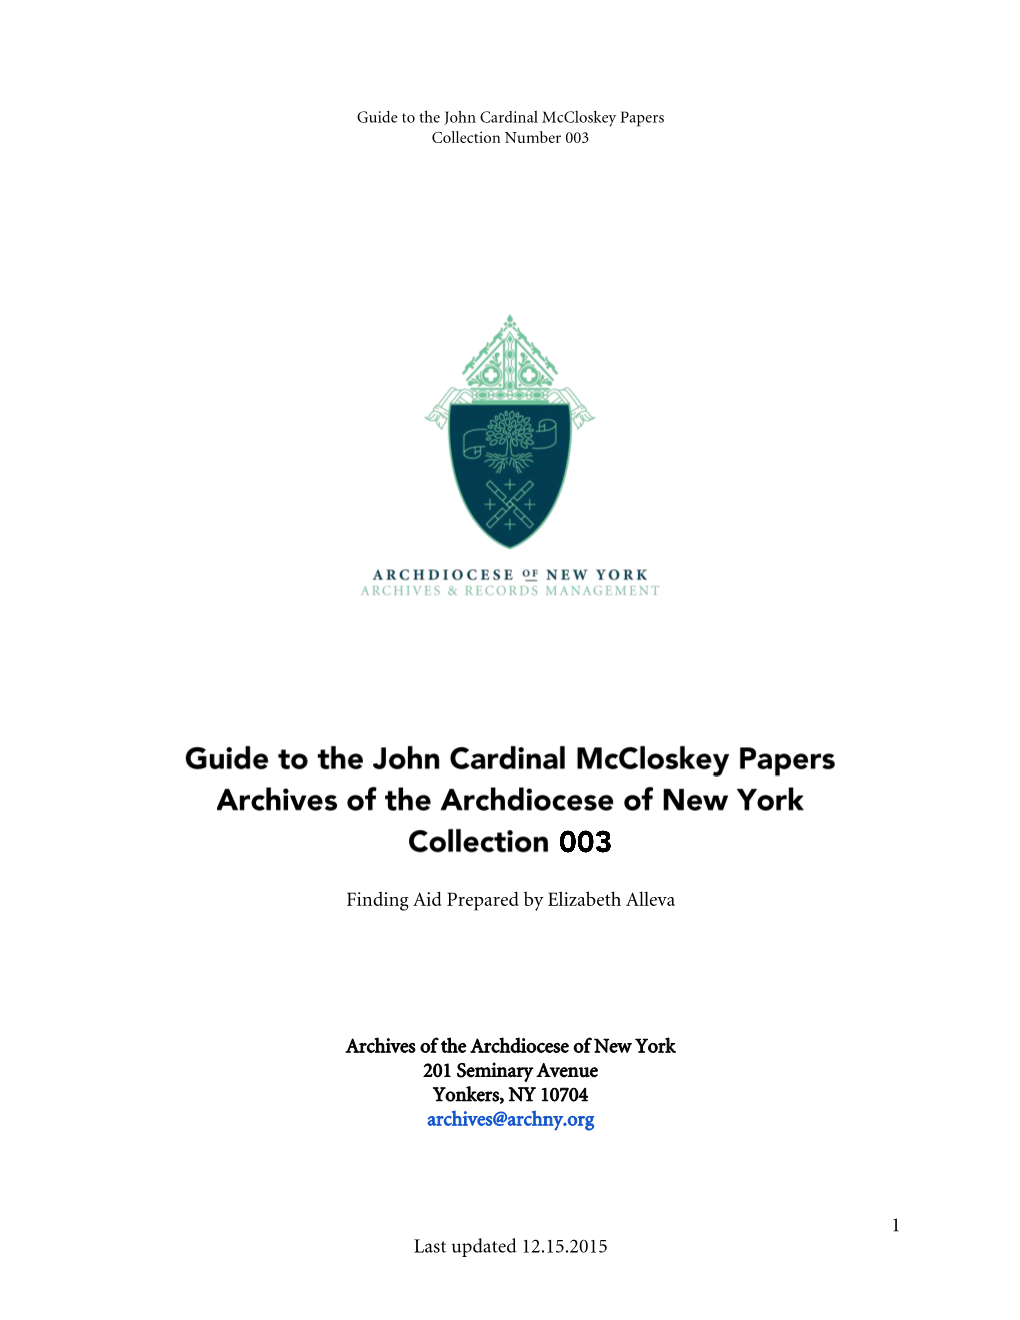 John Cardinal Mccloskey Collection